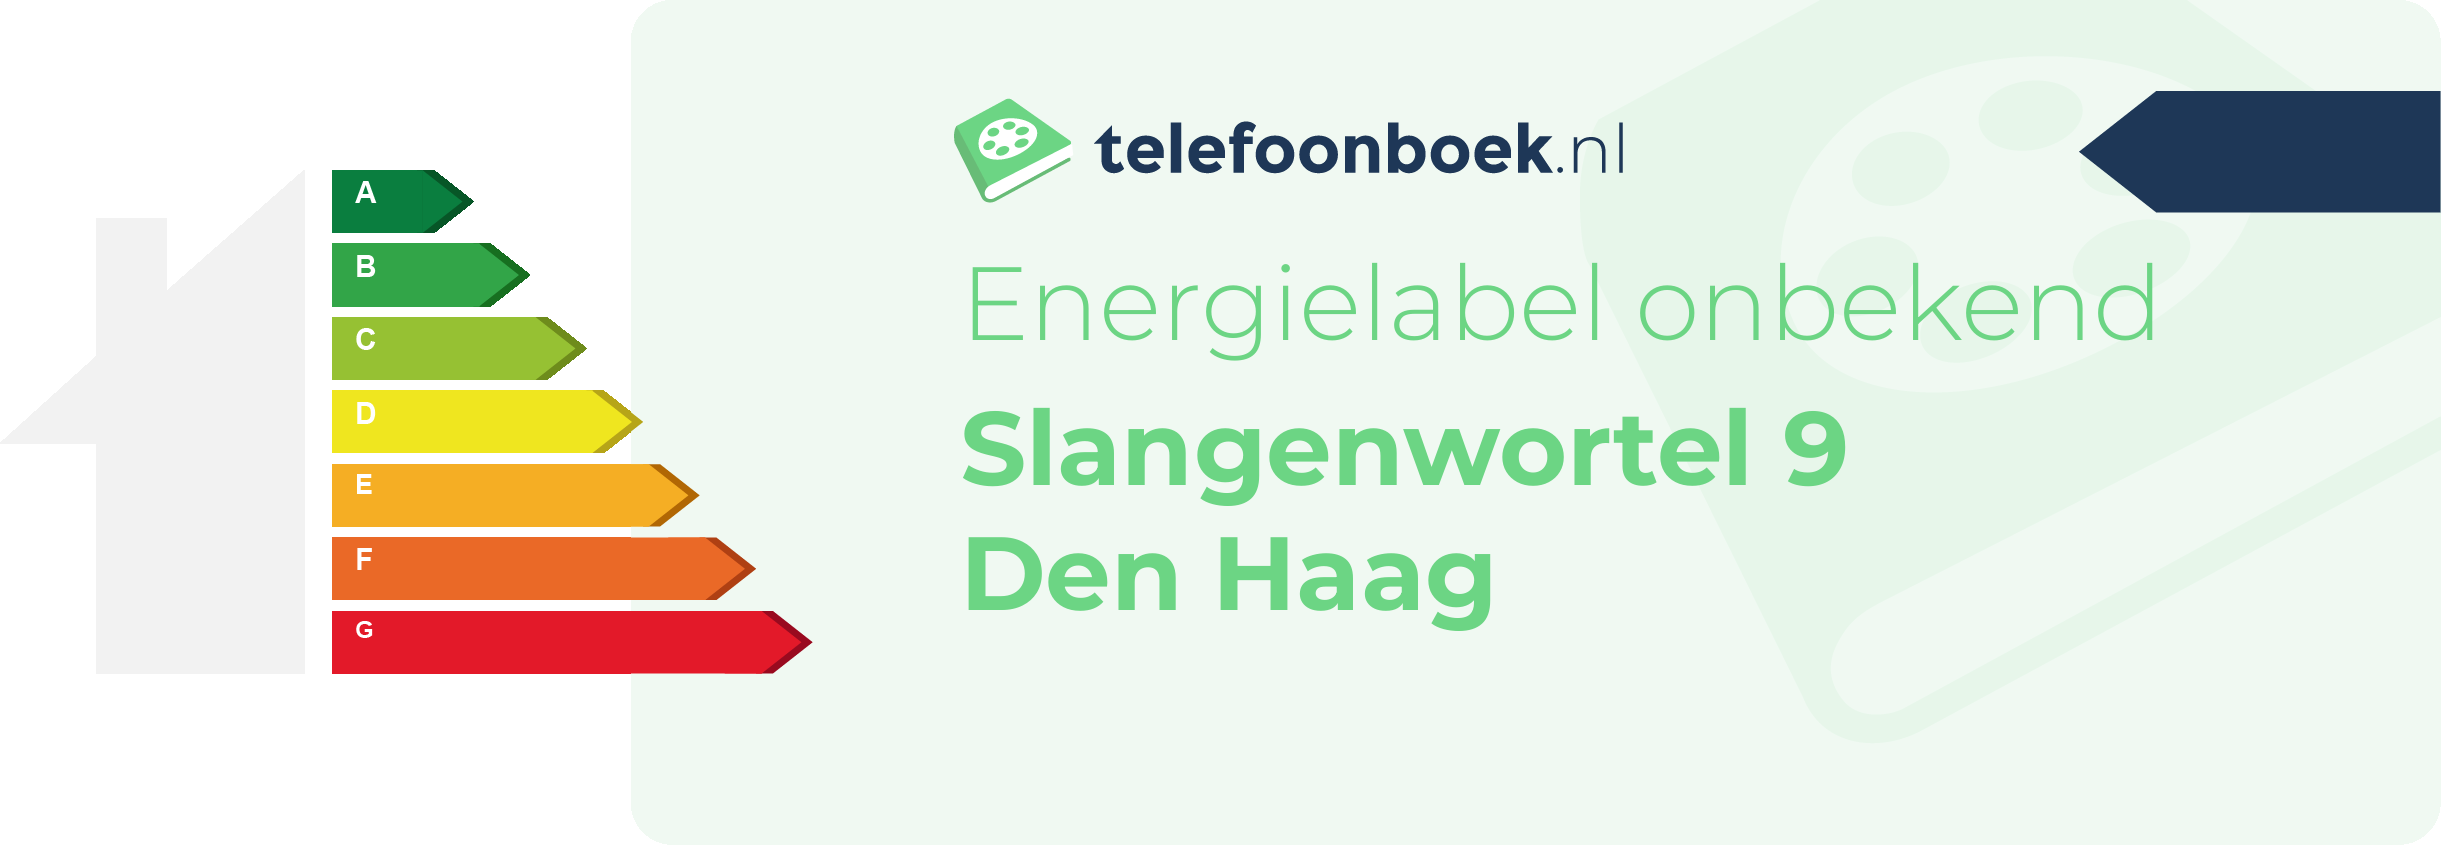 Energielabel Slangenwortel 9 Den Haag